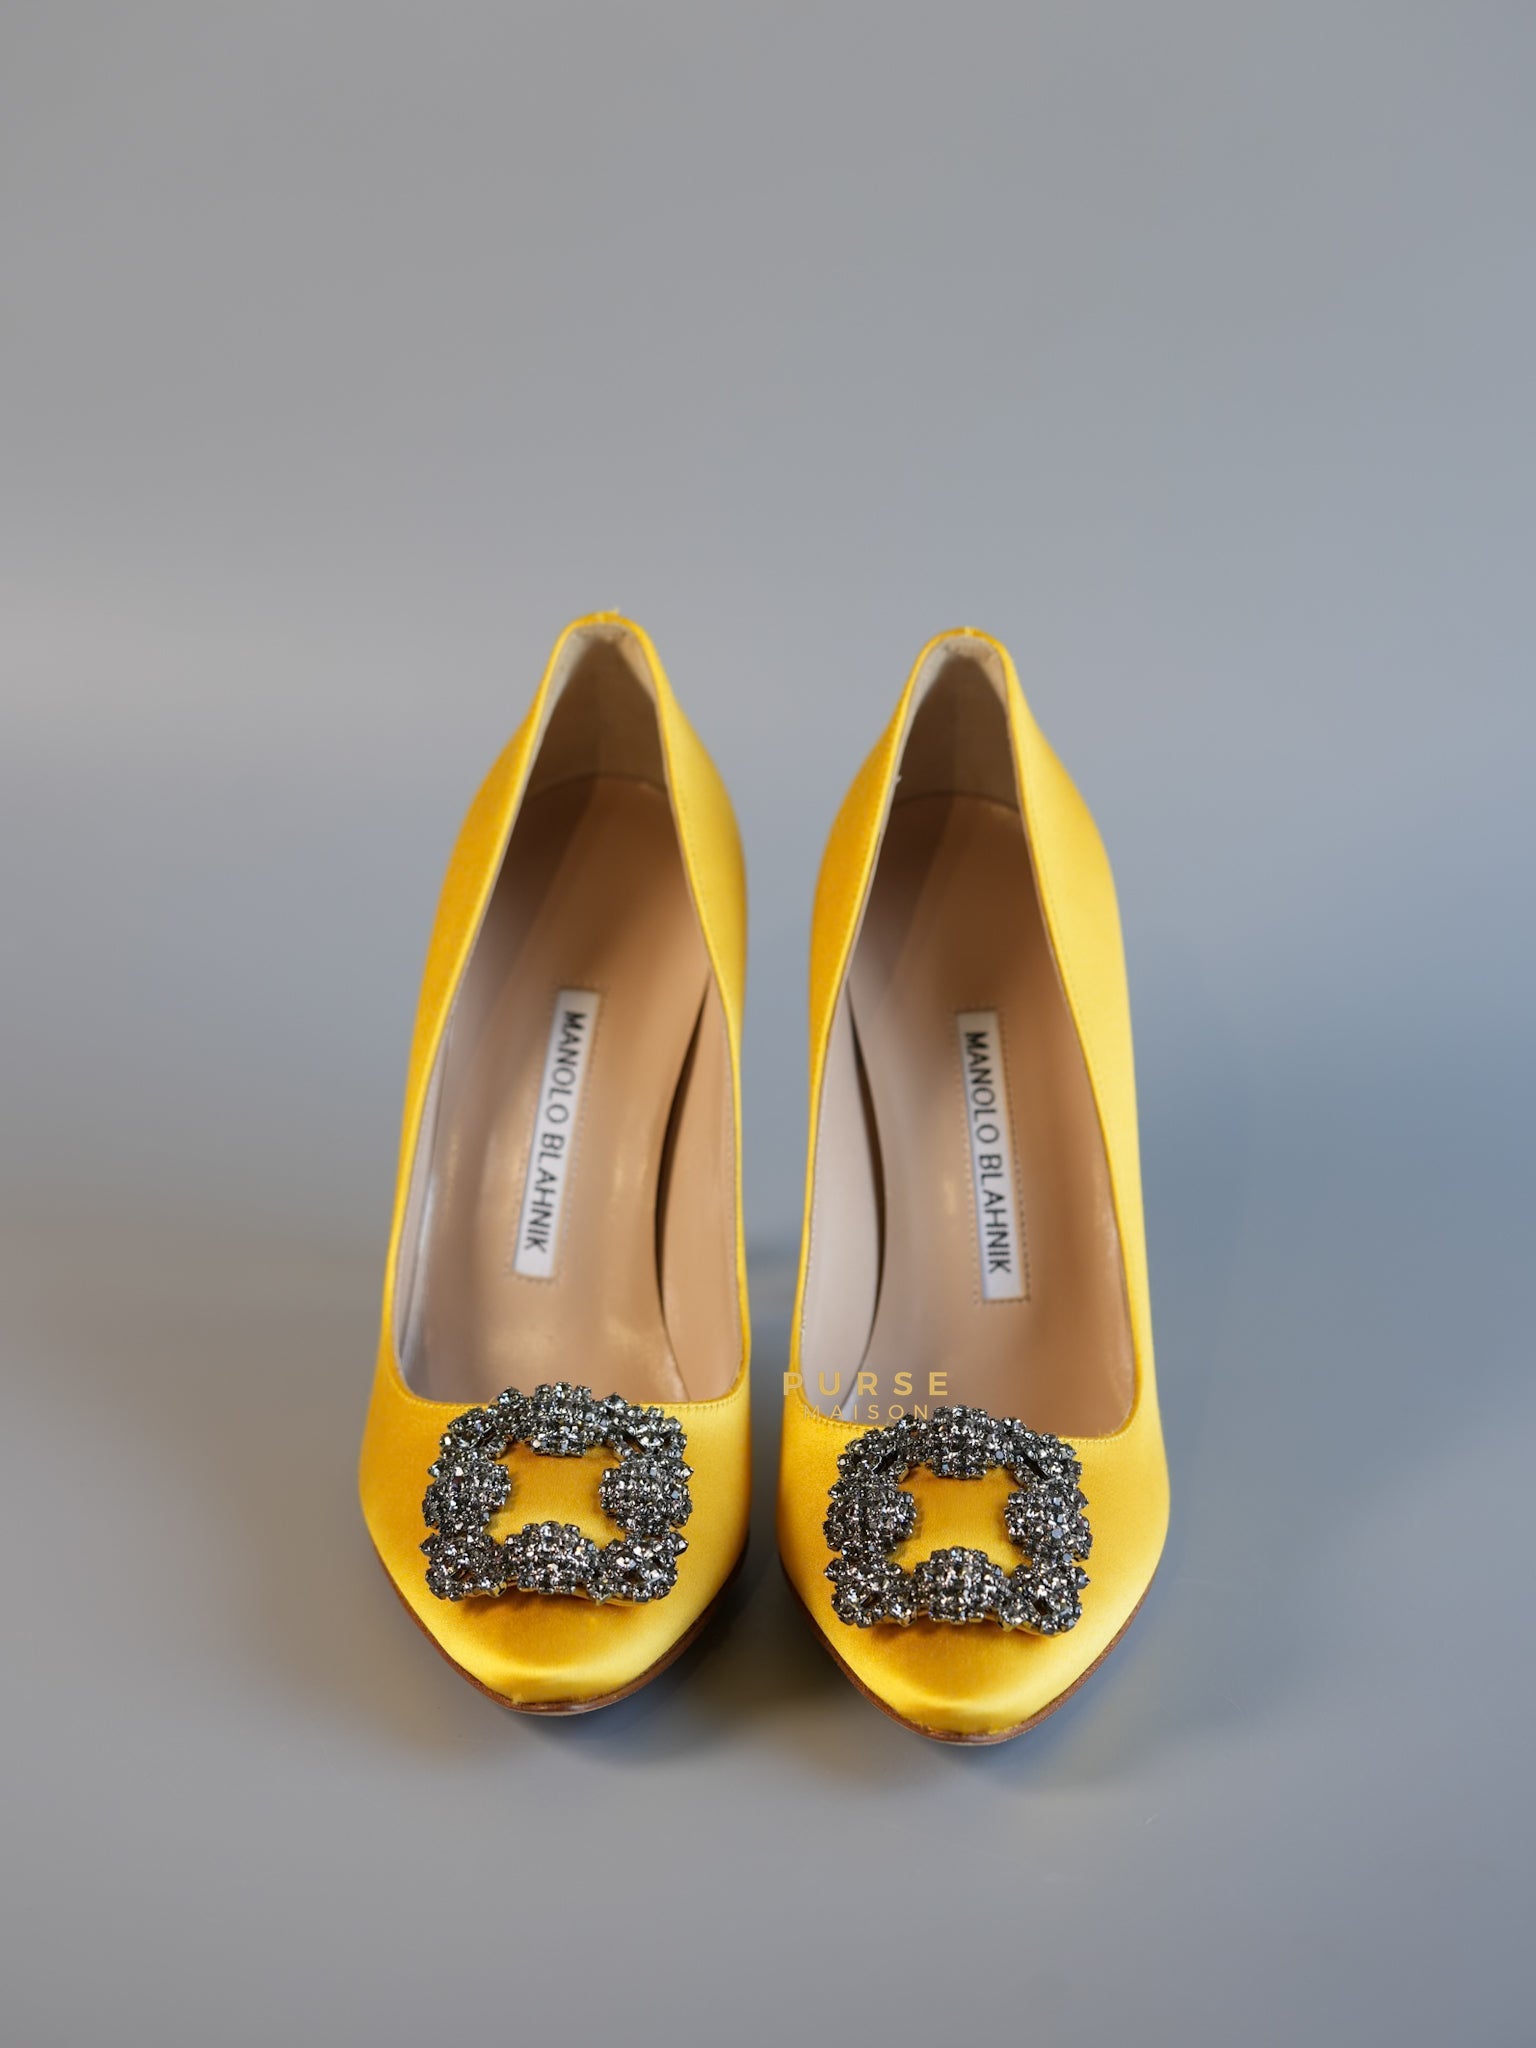 Hangisi 105 Byel Satin Heel Sandals Size 36 EU (24cm) | Purse Maison Luxury Bags Shop